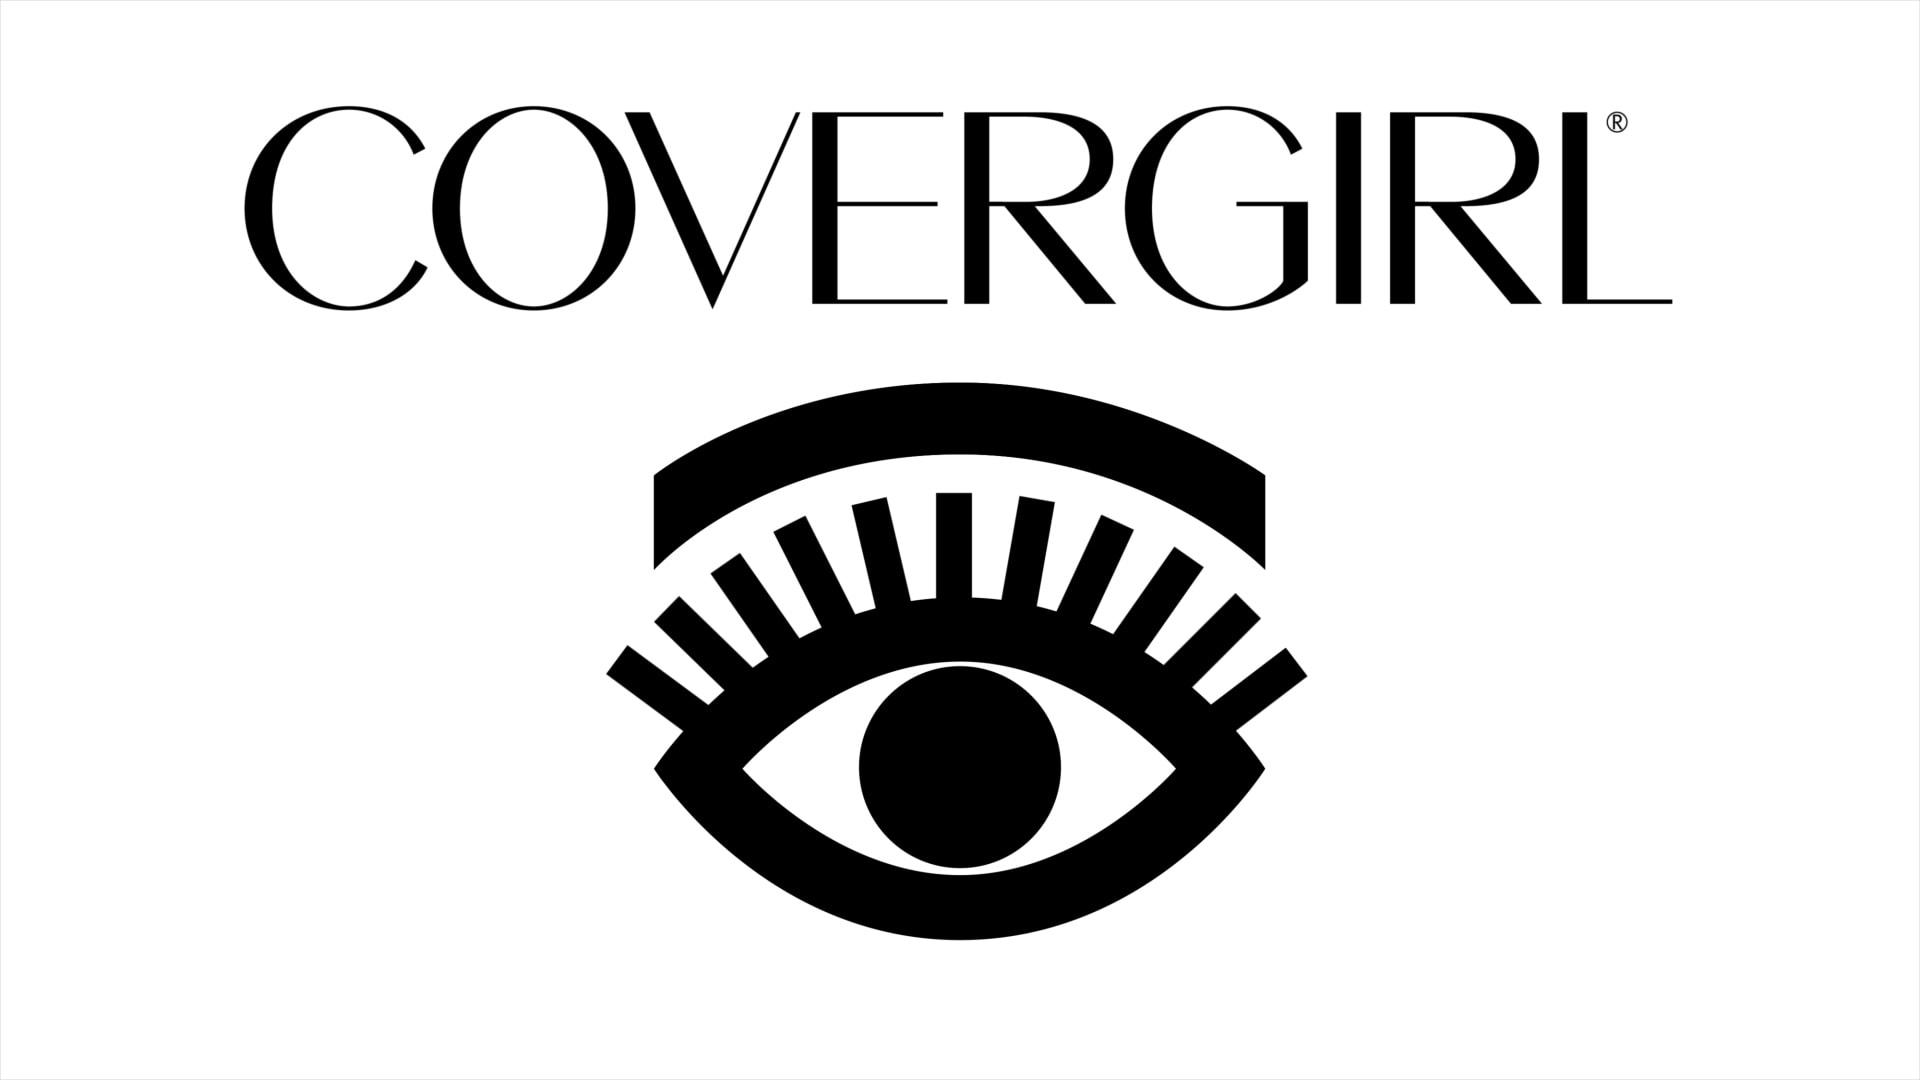 Covergirl Logo - Covergirl